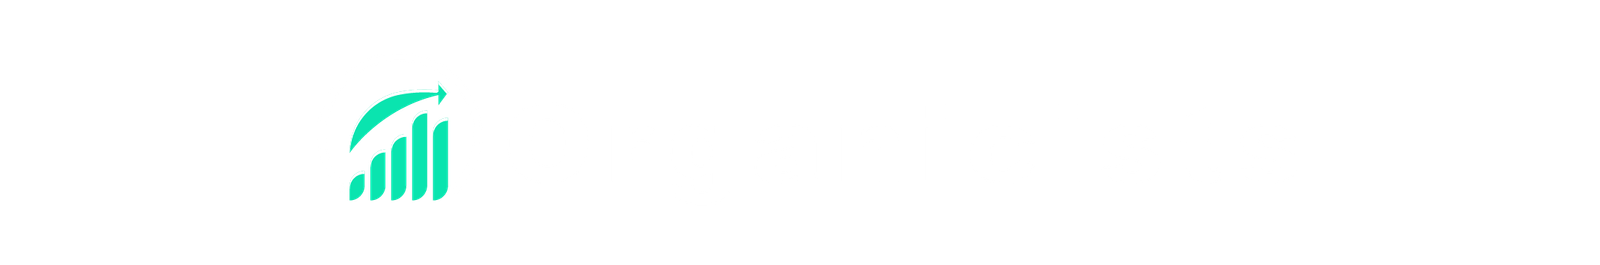 Organicists